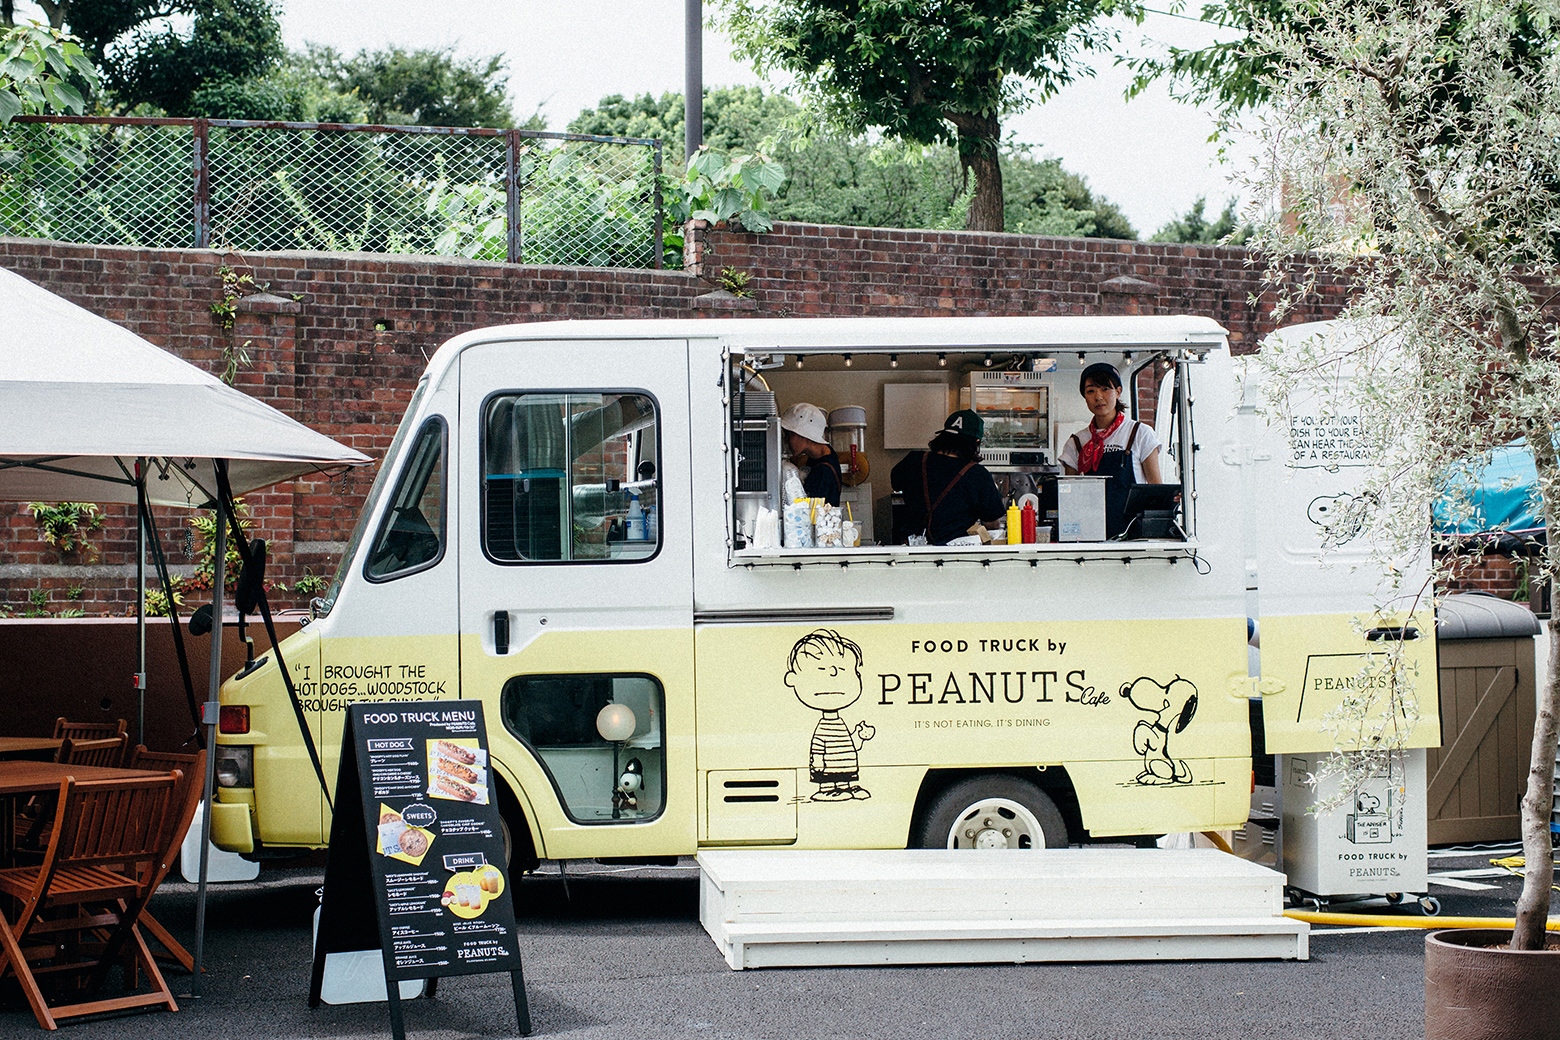 期間限定 スヌーピーのテーマカフェ Peanuts Cafe のフードトラックが 大阪 梅田 のショッピングモールに8 7 金 から登場 株式会社ポトマックのプレスリリース